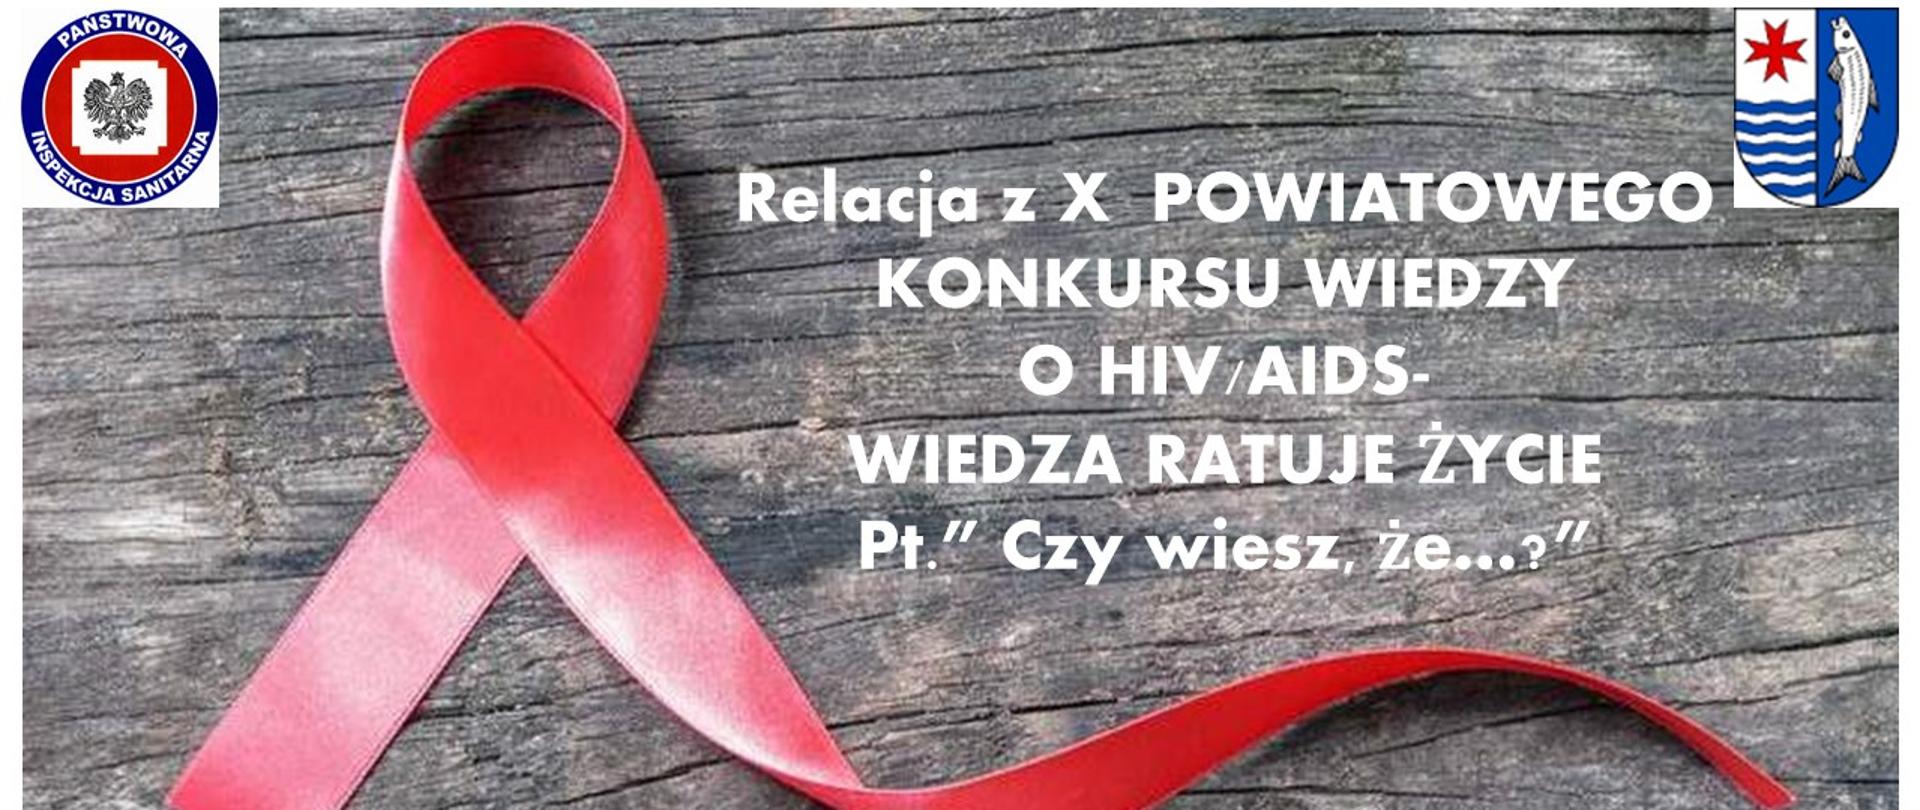 Relacja z organizacji Powiatowego Konkursu Wiedzy o HIV/AIDS